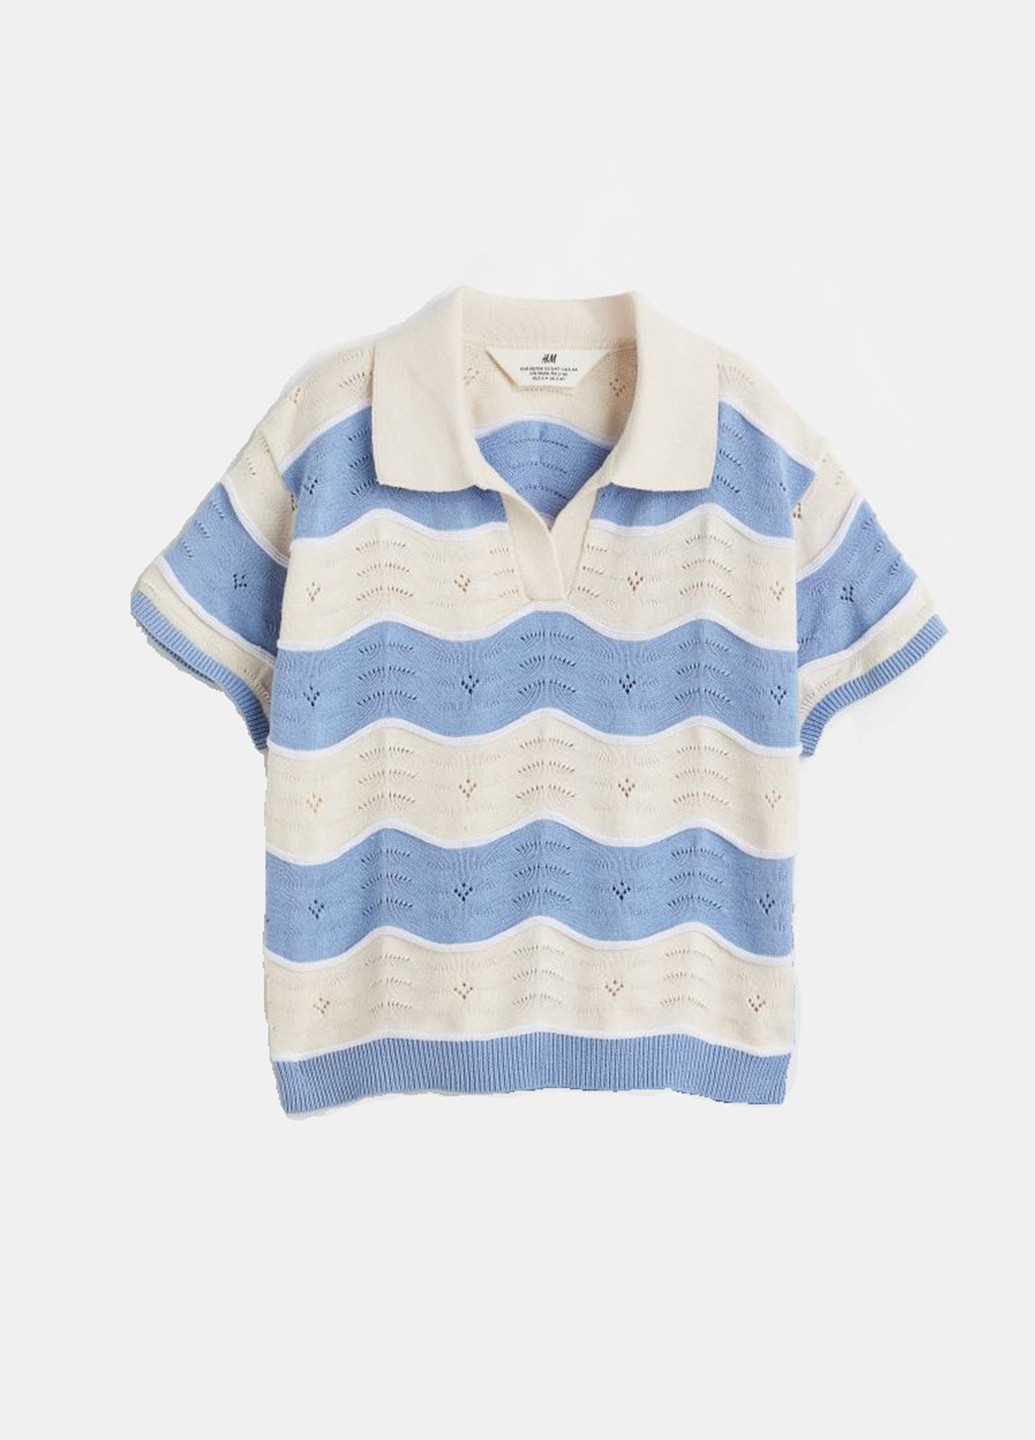 Цветная детская футболка-поло для мальчика H&M в полоску